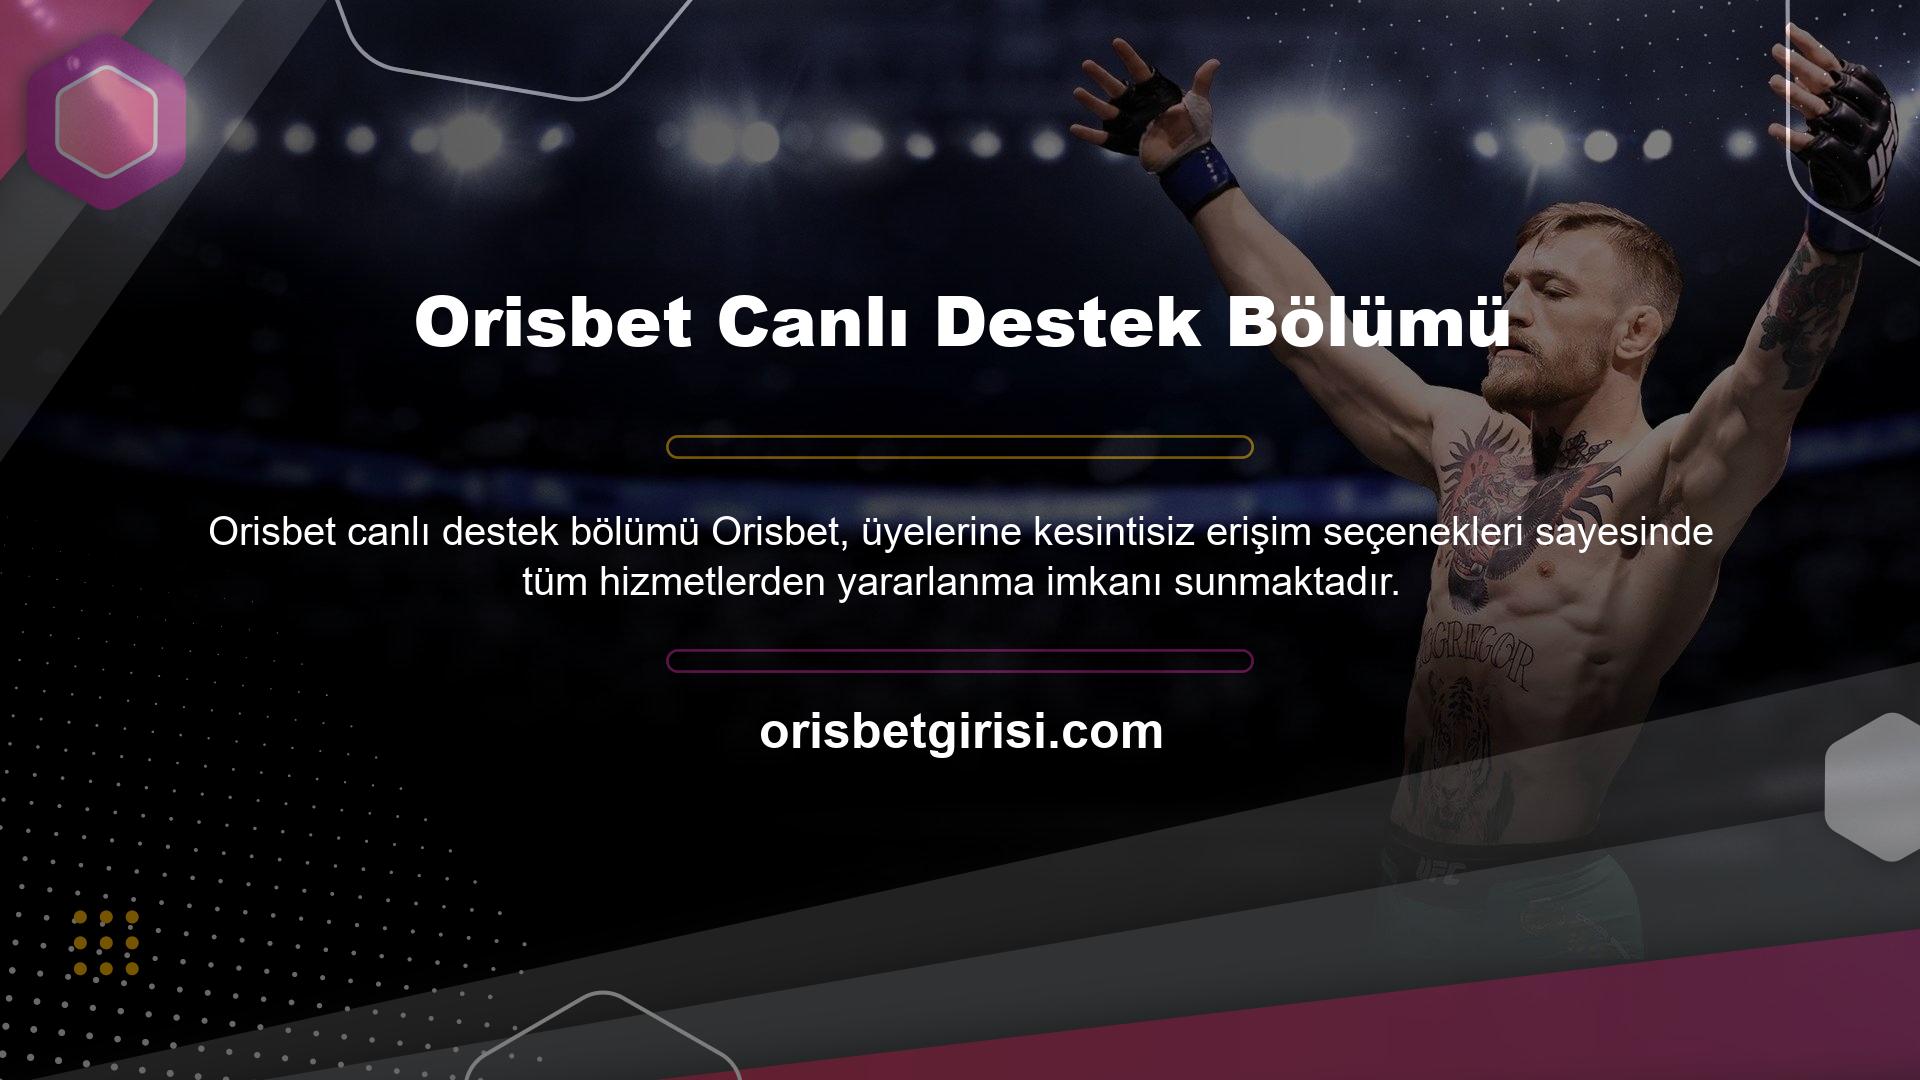 Orisbet giriş adresi değişikliğini takip eden Türk kullanıcılar canlı destek bölümünü seçerek 7/24 destek talebinde bulunabilirler